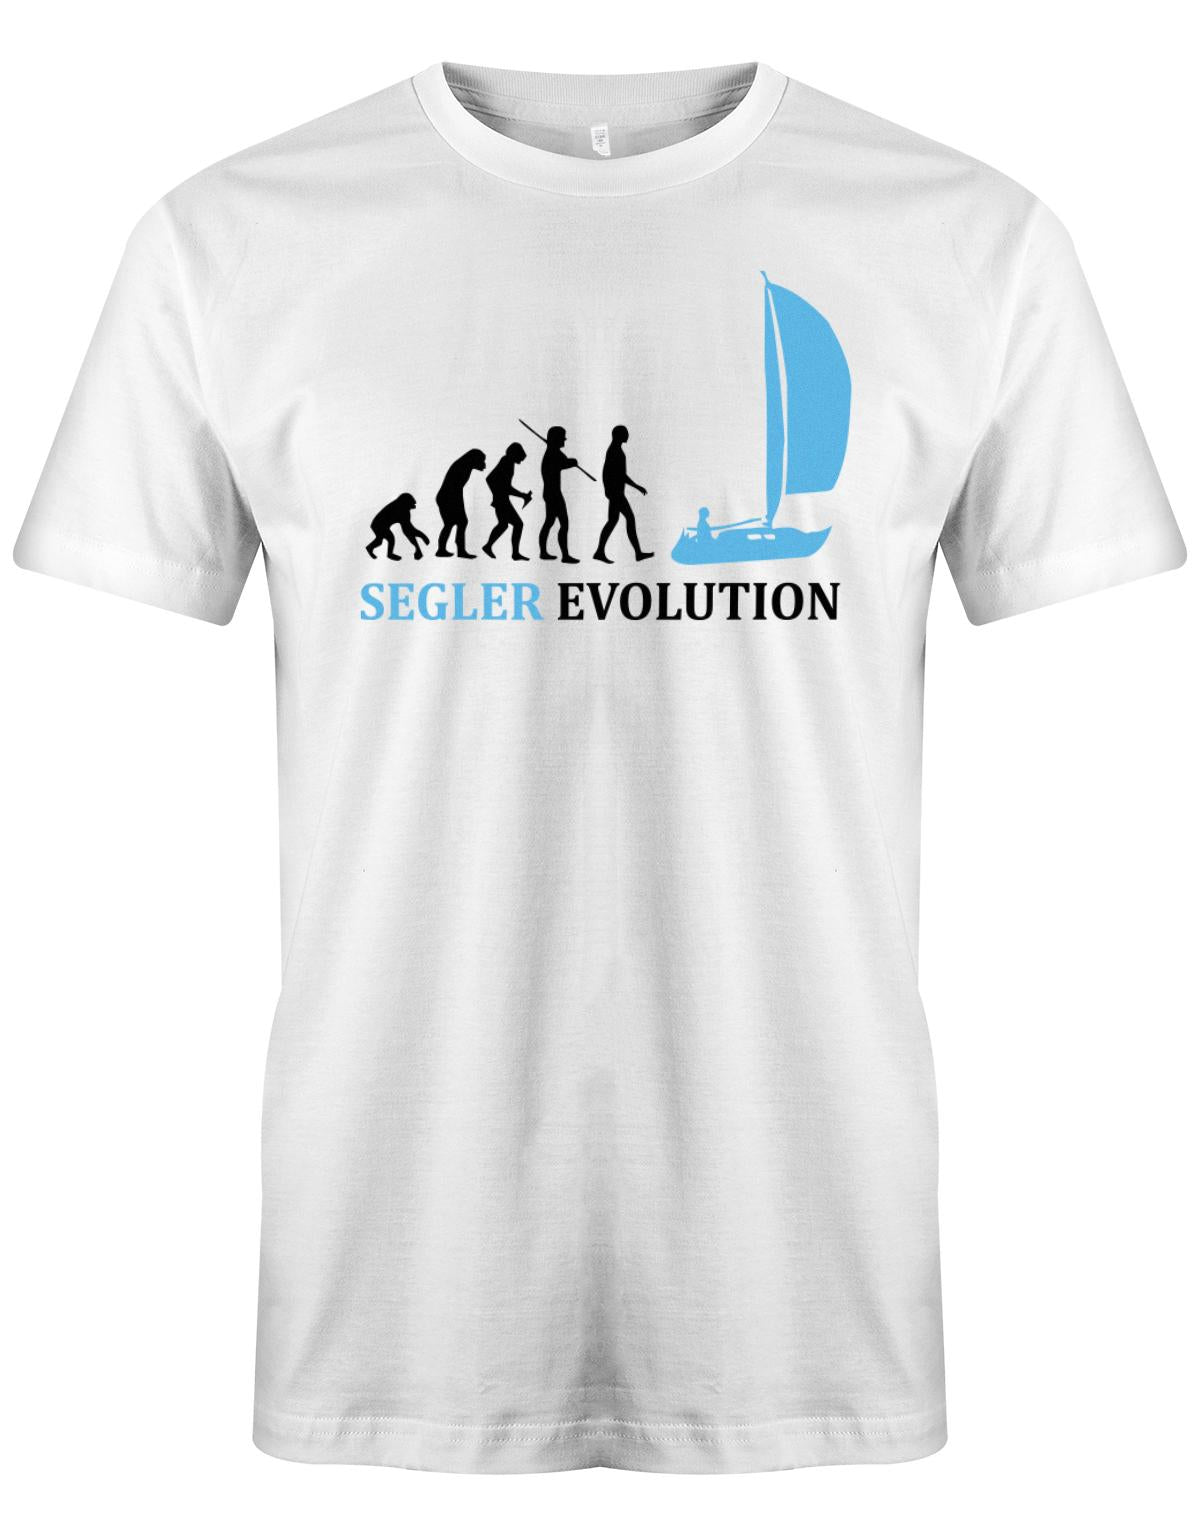 Das Segler t-shirt bedruckt mit "Die Segler Revolution vom Affen zum Segler". Weiss